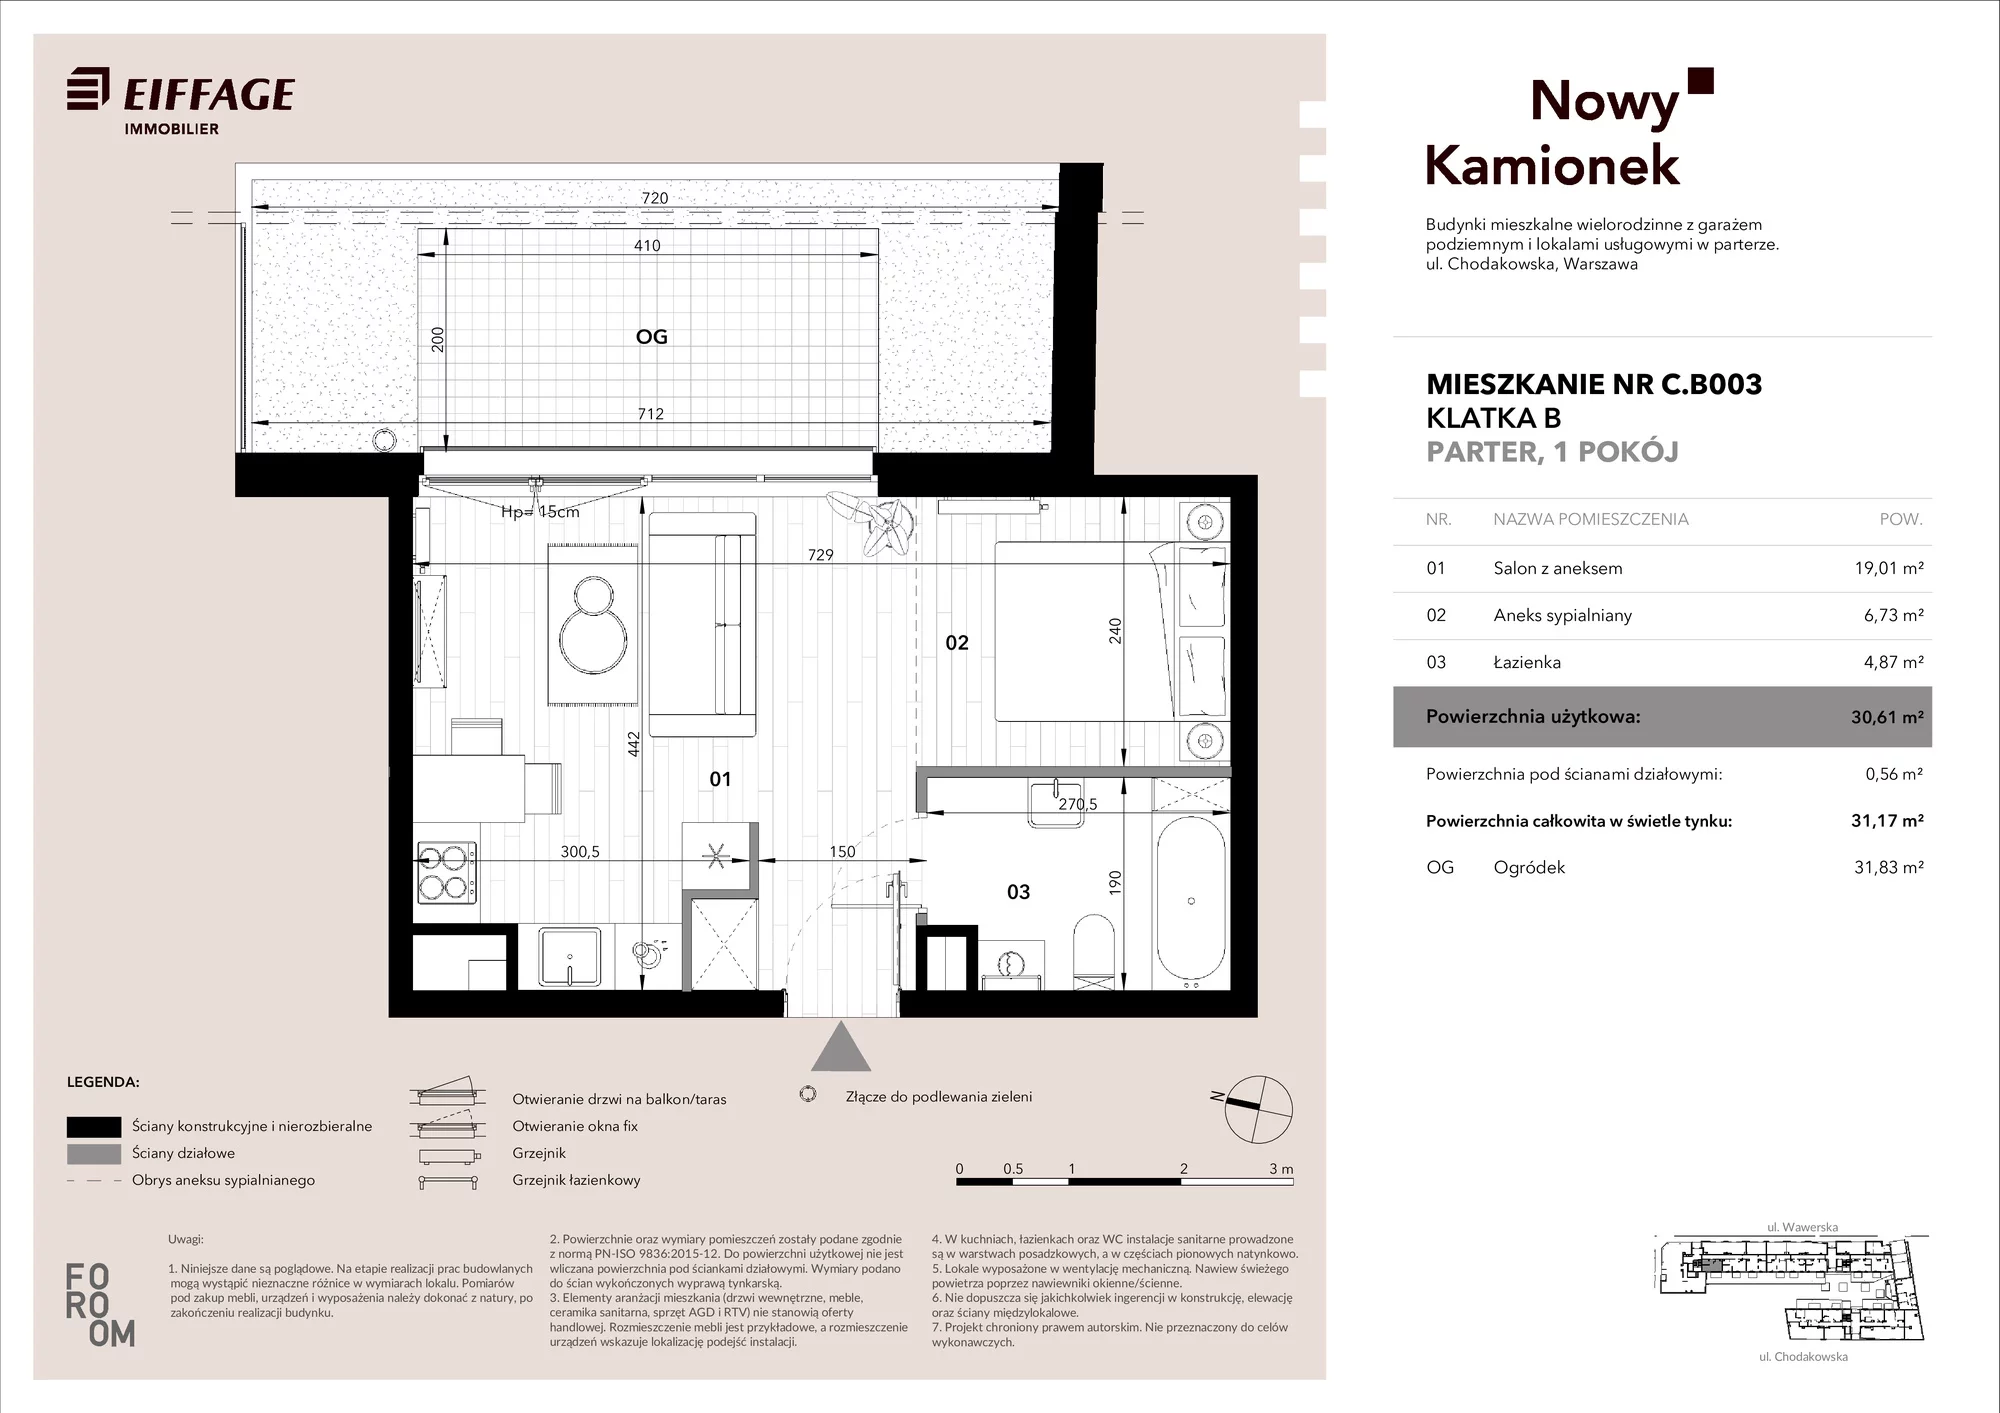 Mieszkanie 30,61 m², parter, oferta nr C.B003, Nowy Kamionek, Warszawa, Praga Południe, Kamionek, ul. Chodakowska